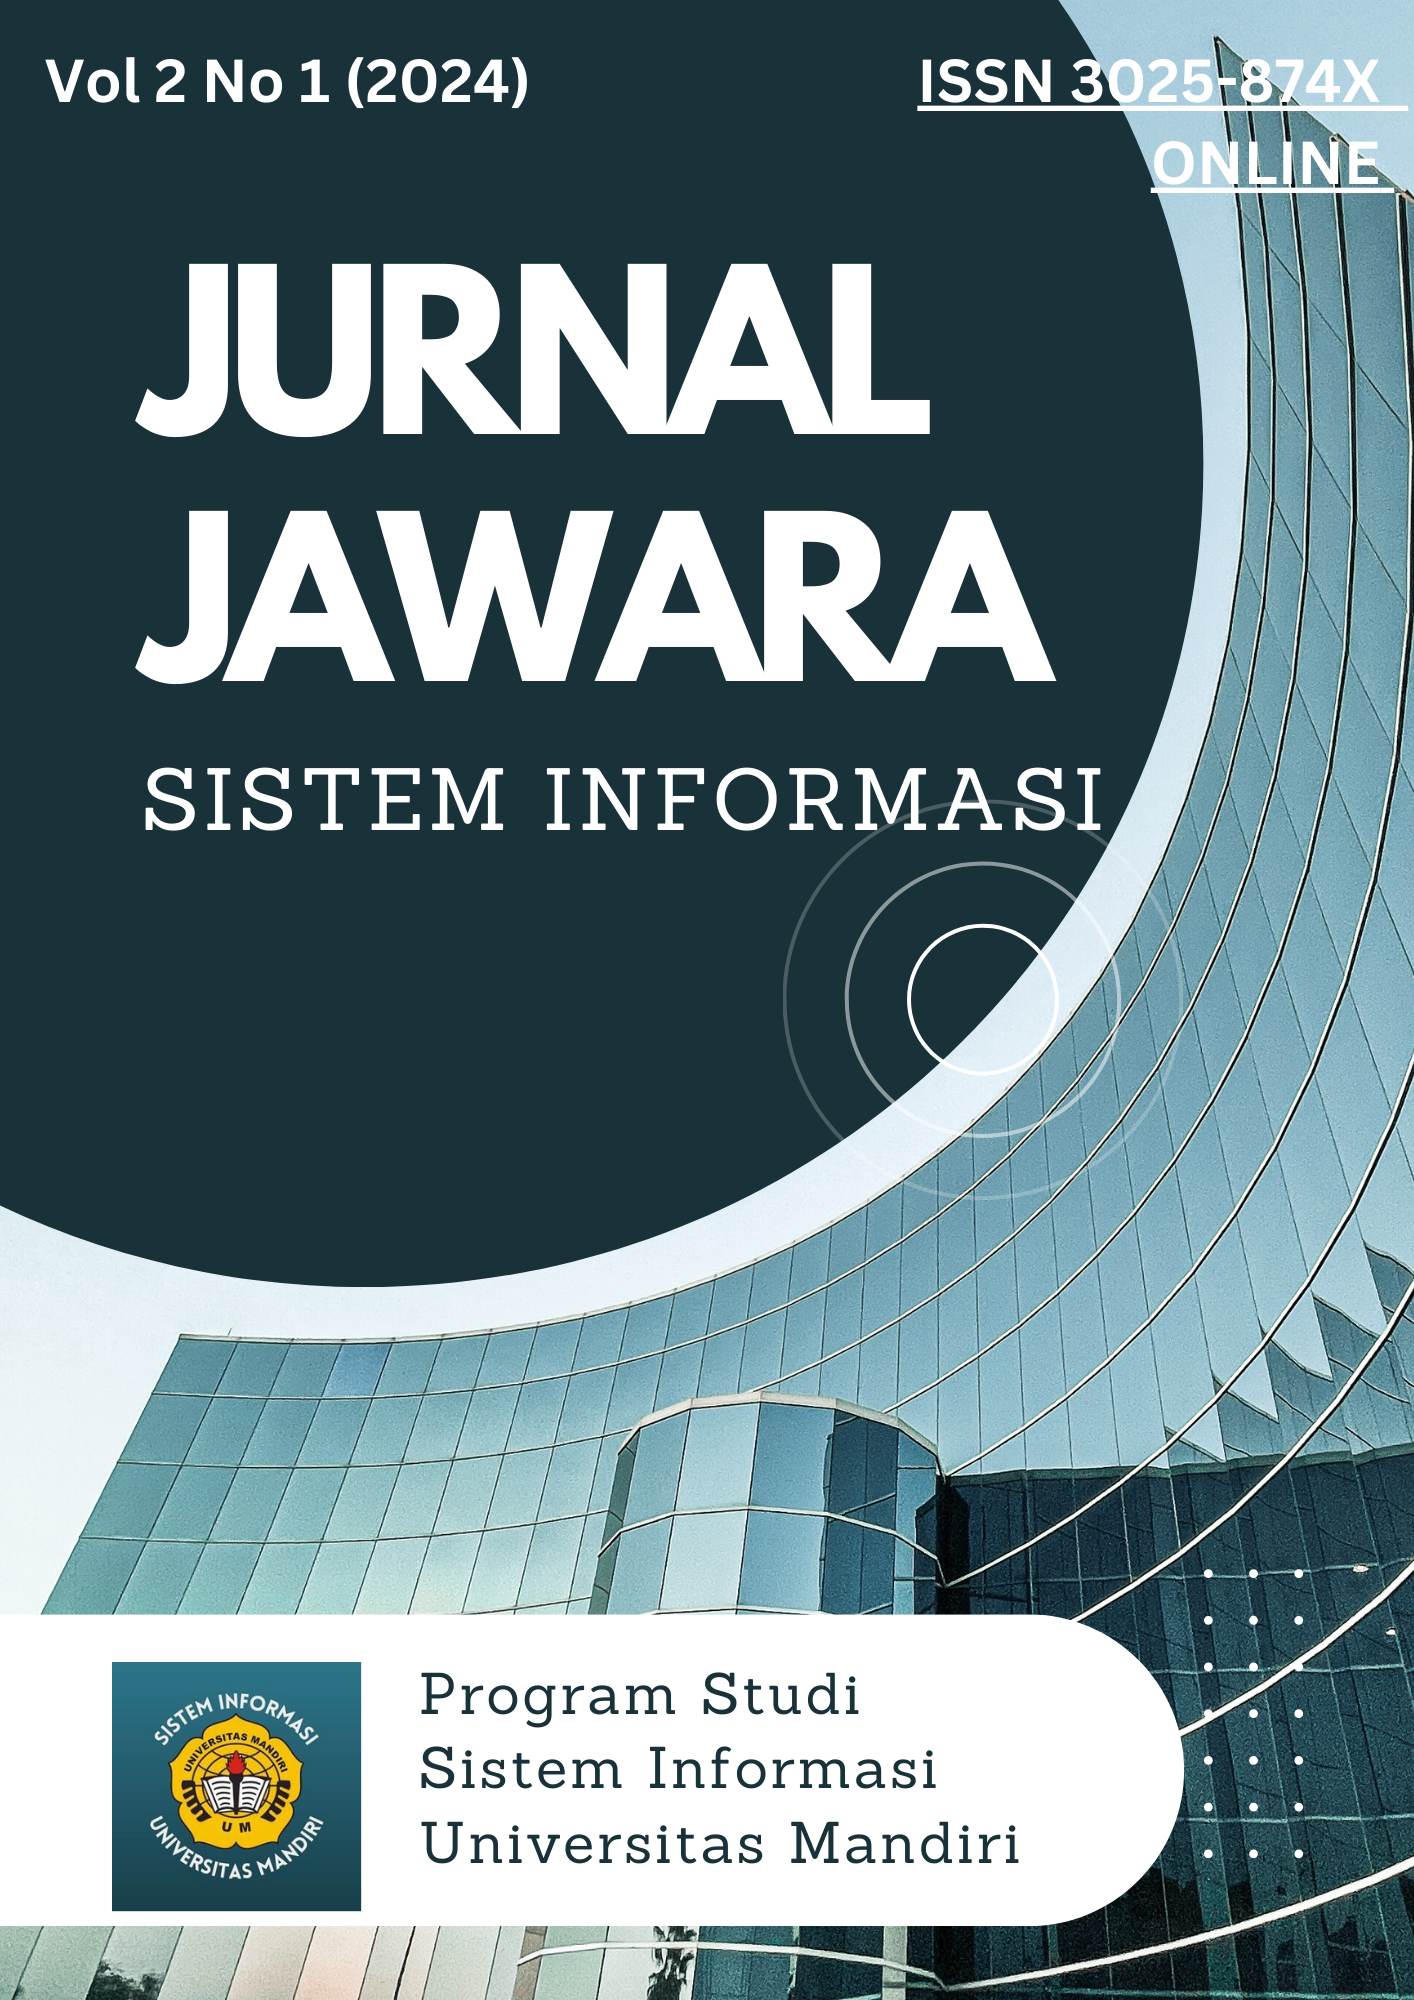 					Lihat Vol 2 No 1 (2024): Jurnal Jawara Sistem Informasi
				